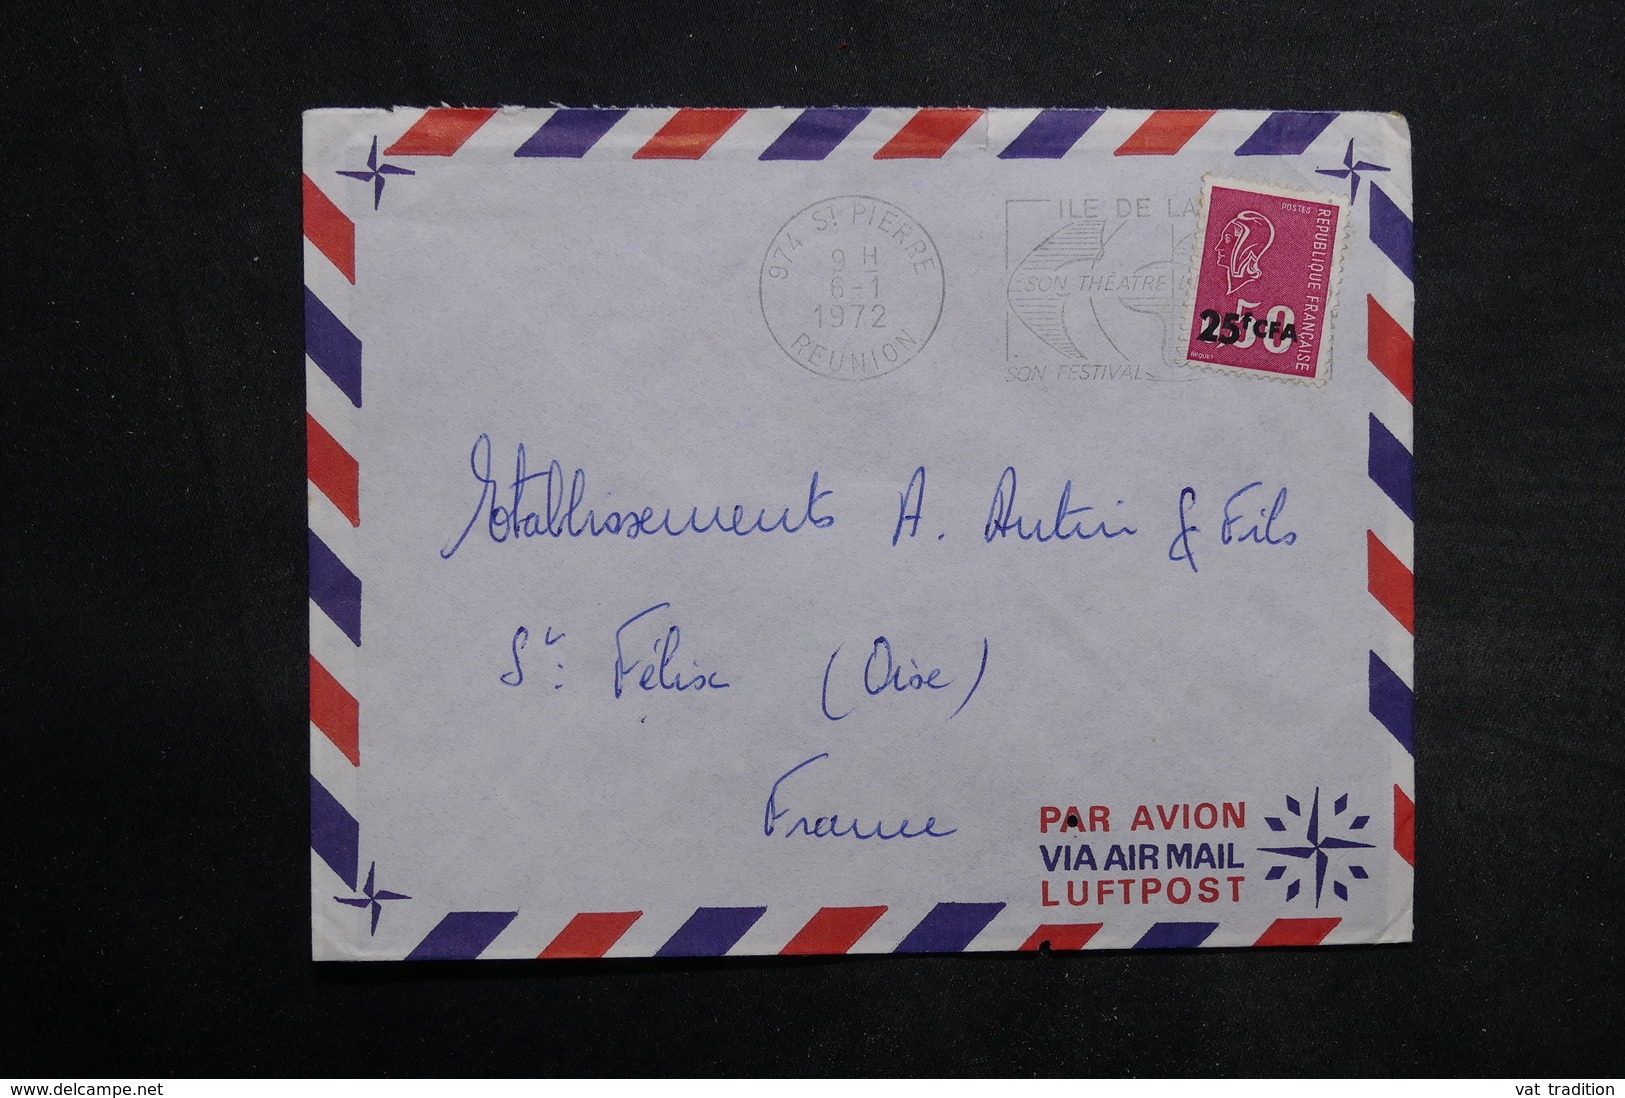 RÉUNION - Lot de 55 enveloppes , période 1970 - L 34243